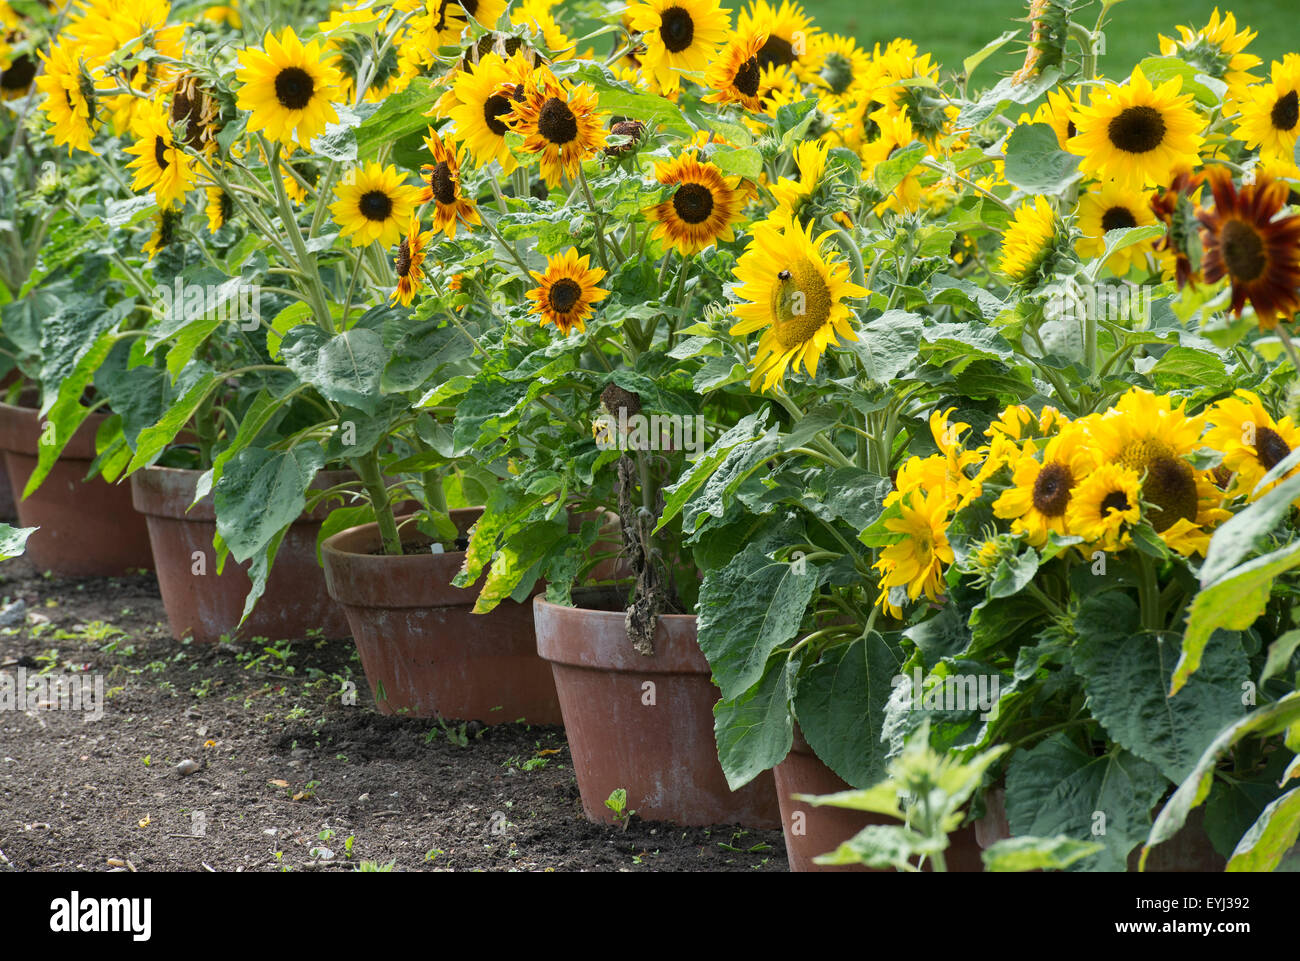 Sunflowers in pots Banque de photographies et d'images à haute résolution -  Alamy